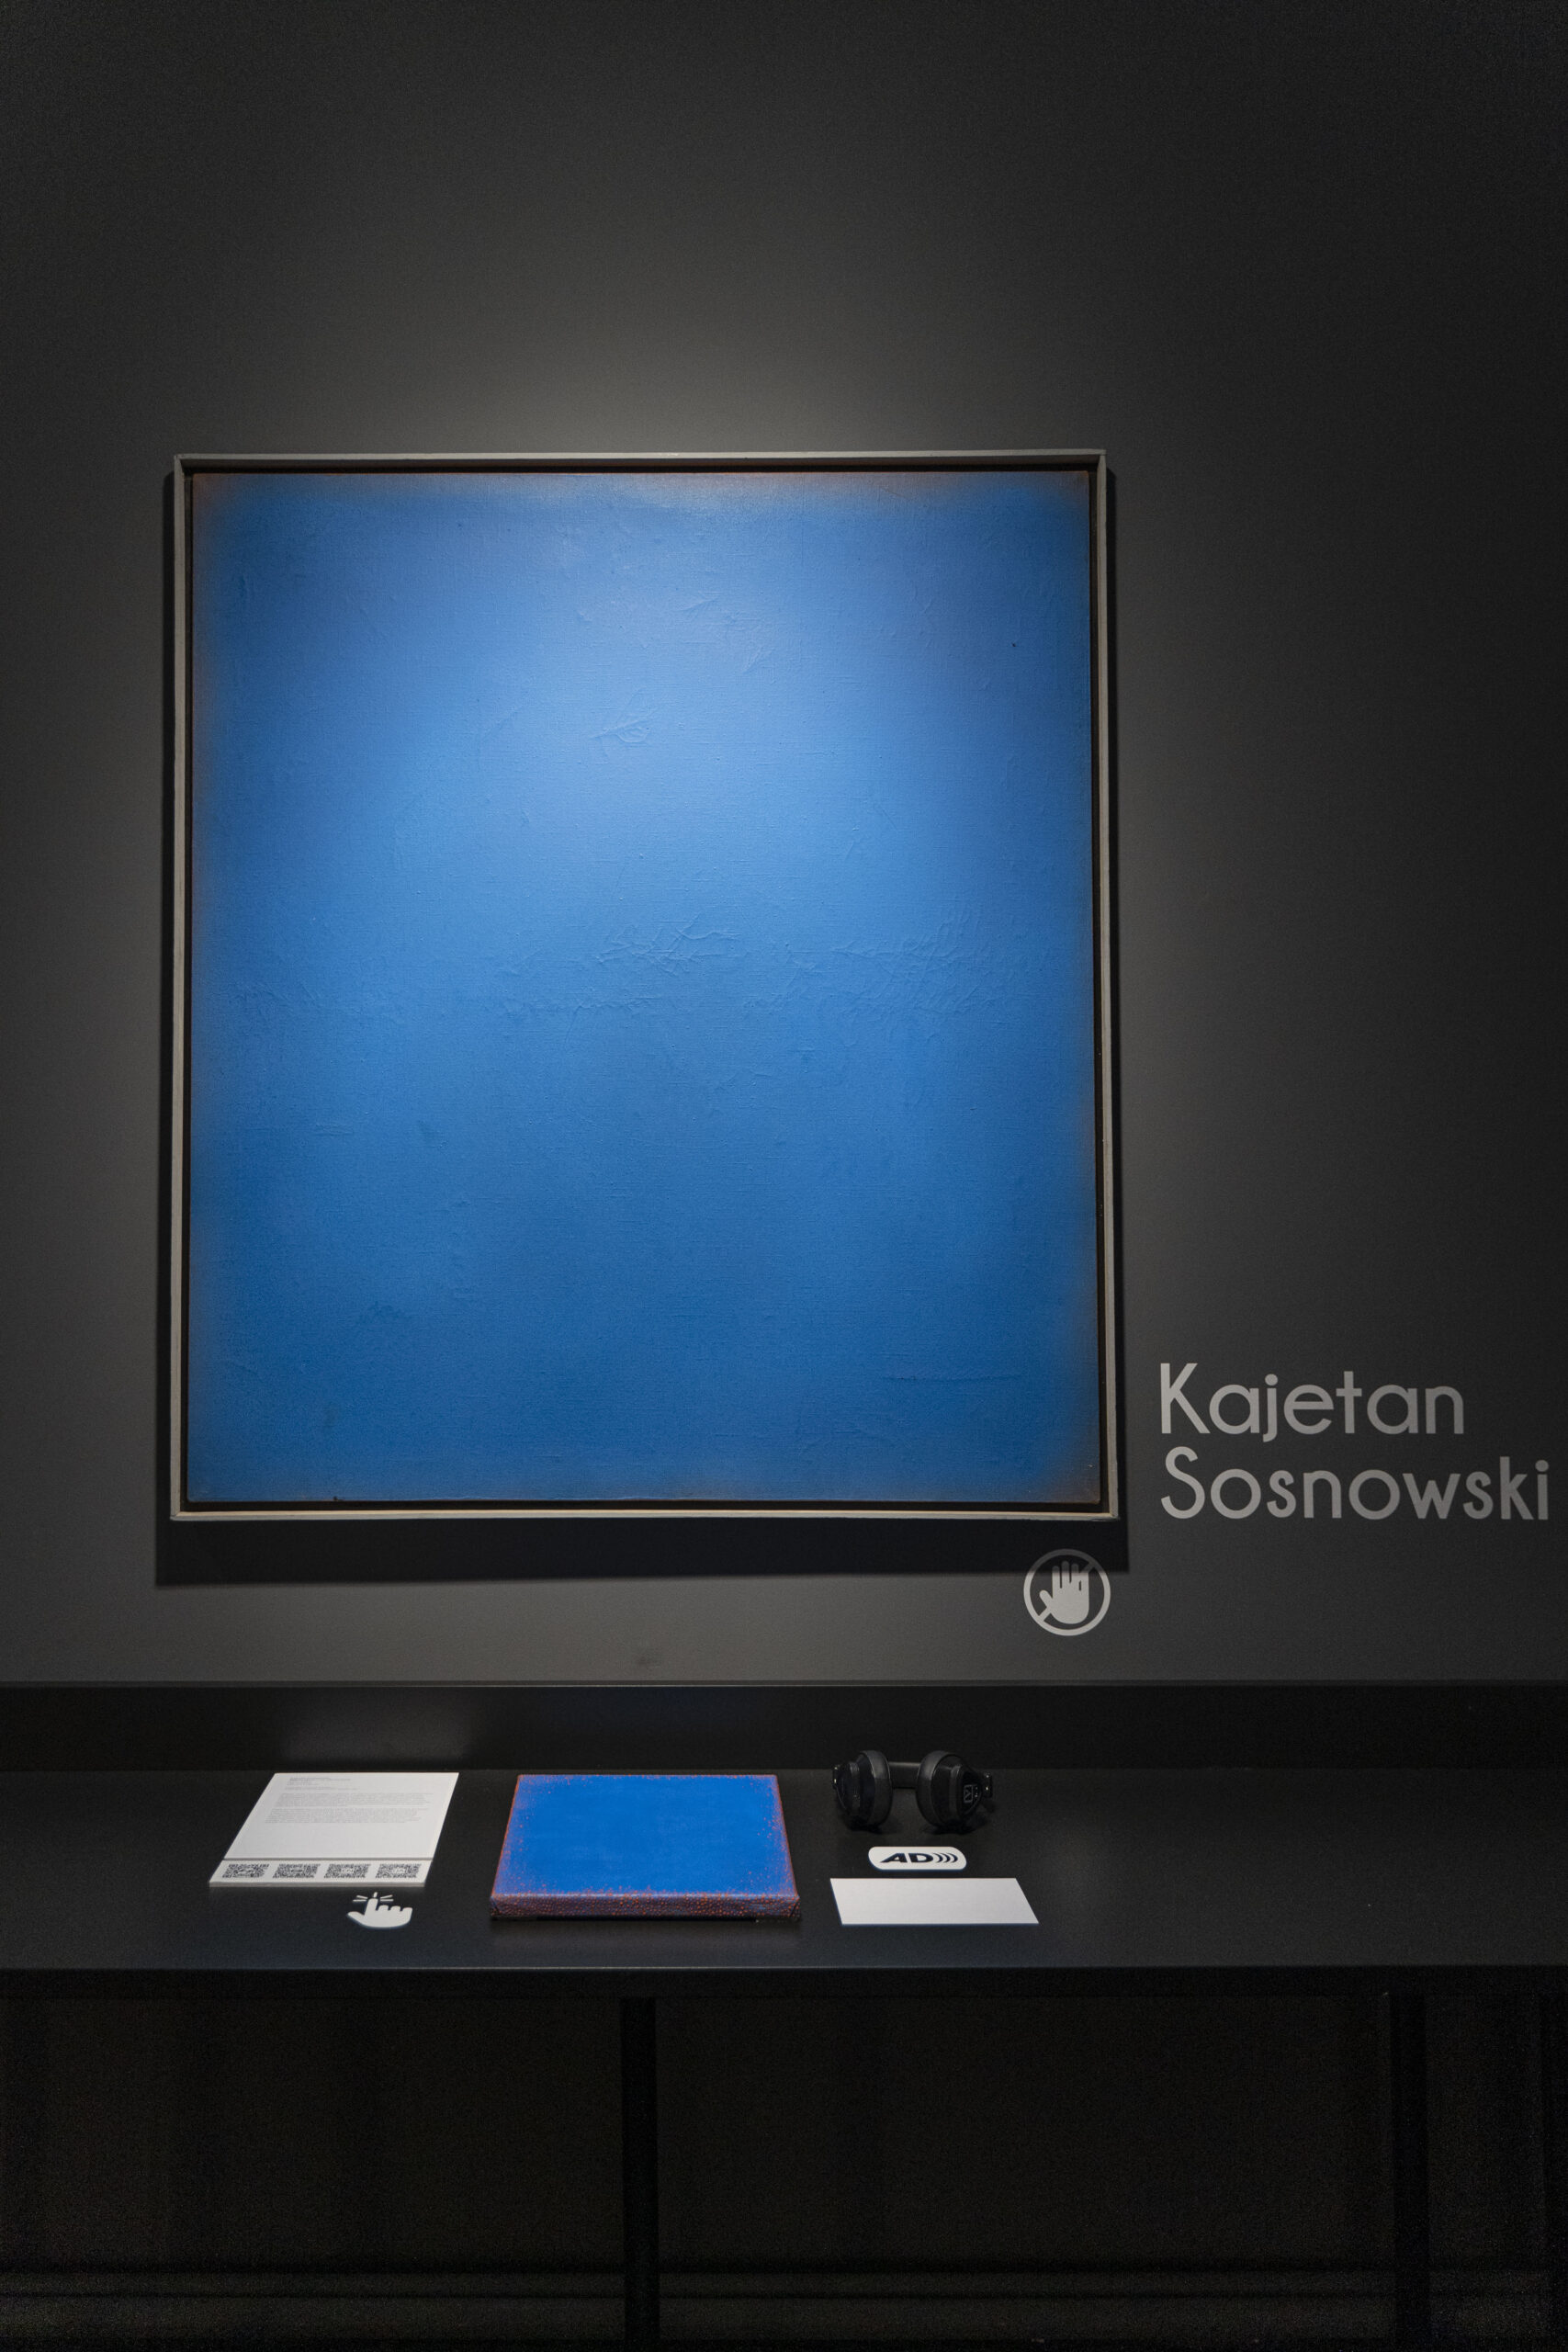 Dokumentacja wystawy „Kolekcja Dostępna”, praca „Błękitny obraz” Kajetana Sosnowskiego oraz adaptacja dotykowa autorstwa Tetyany Falalieievej